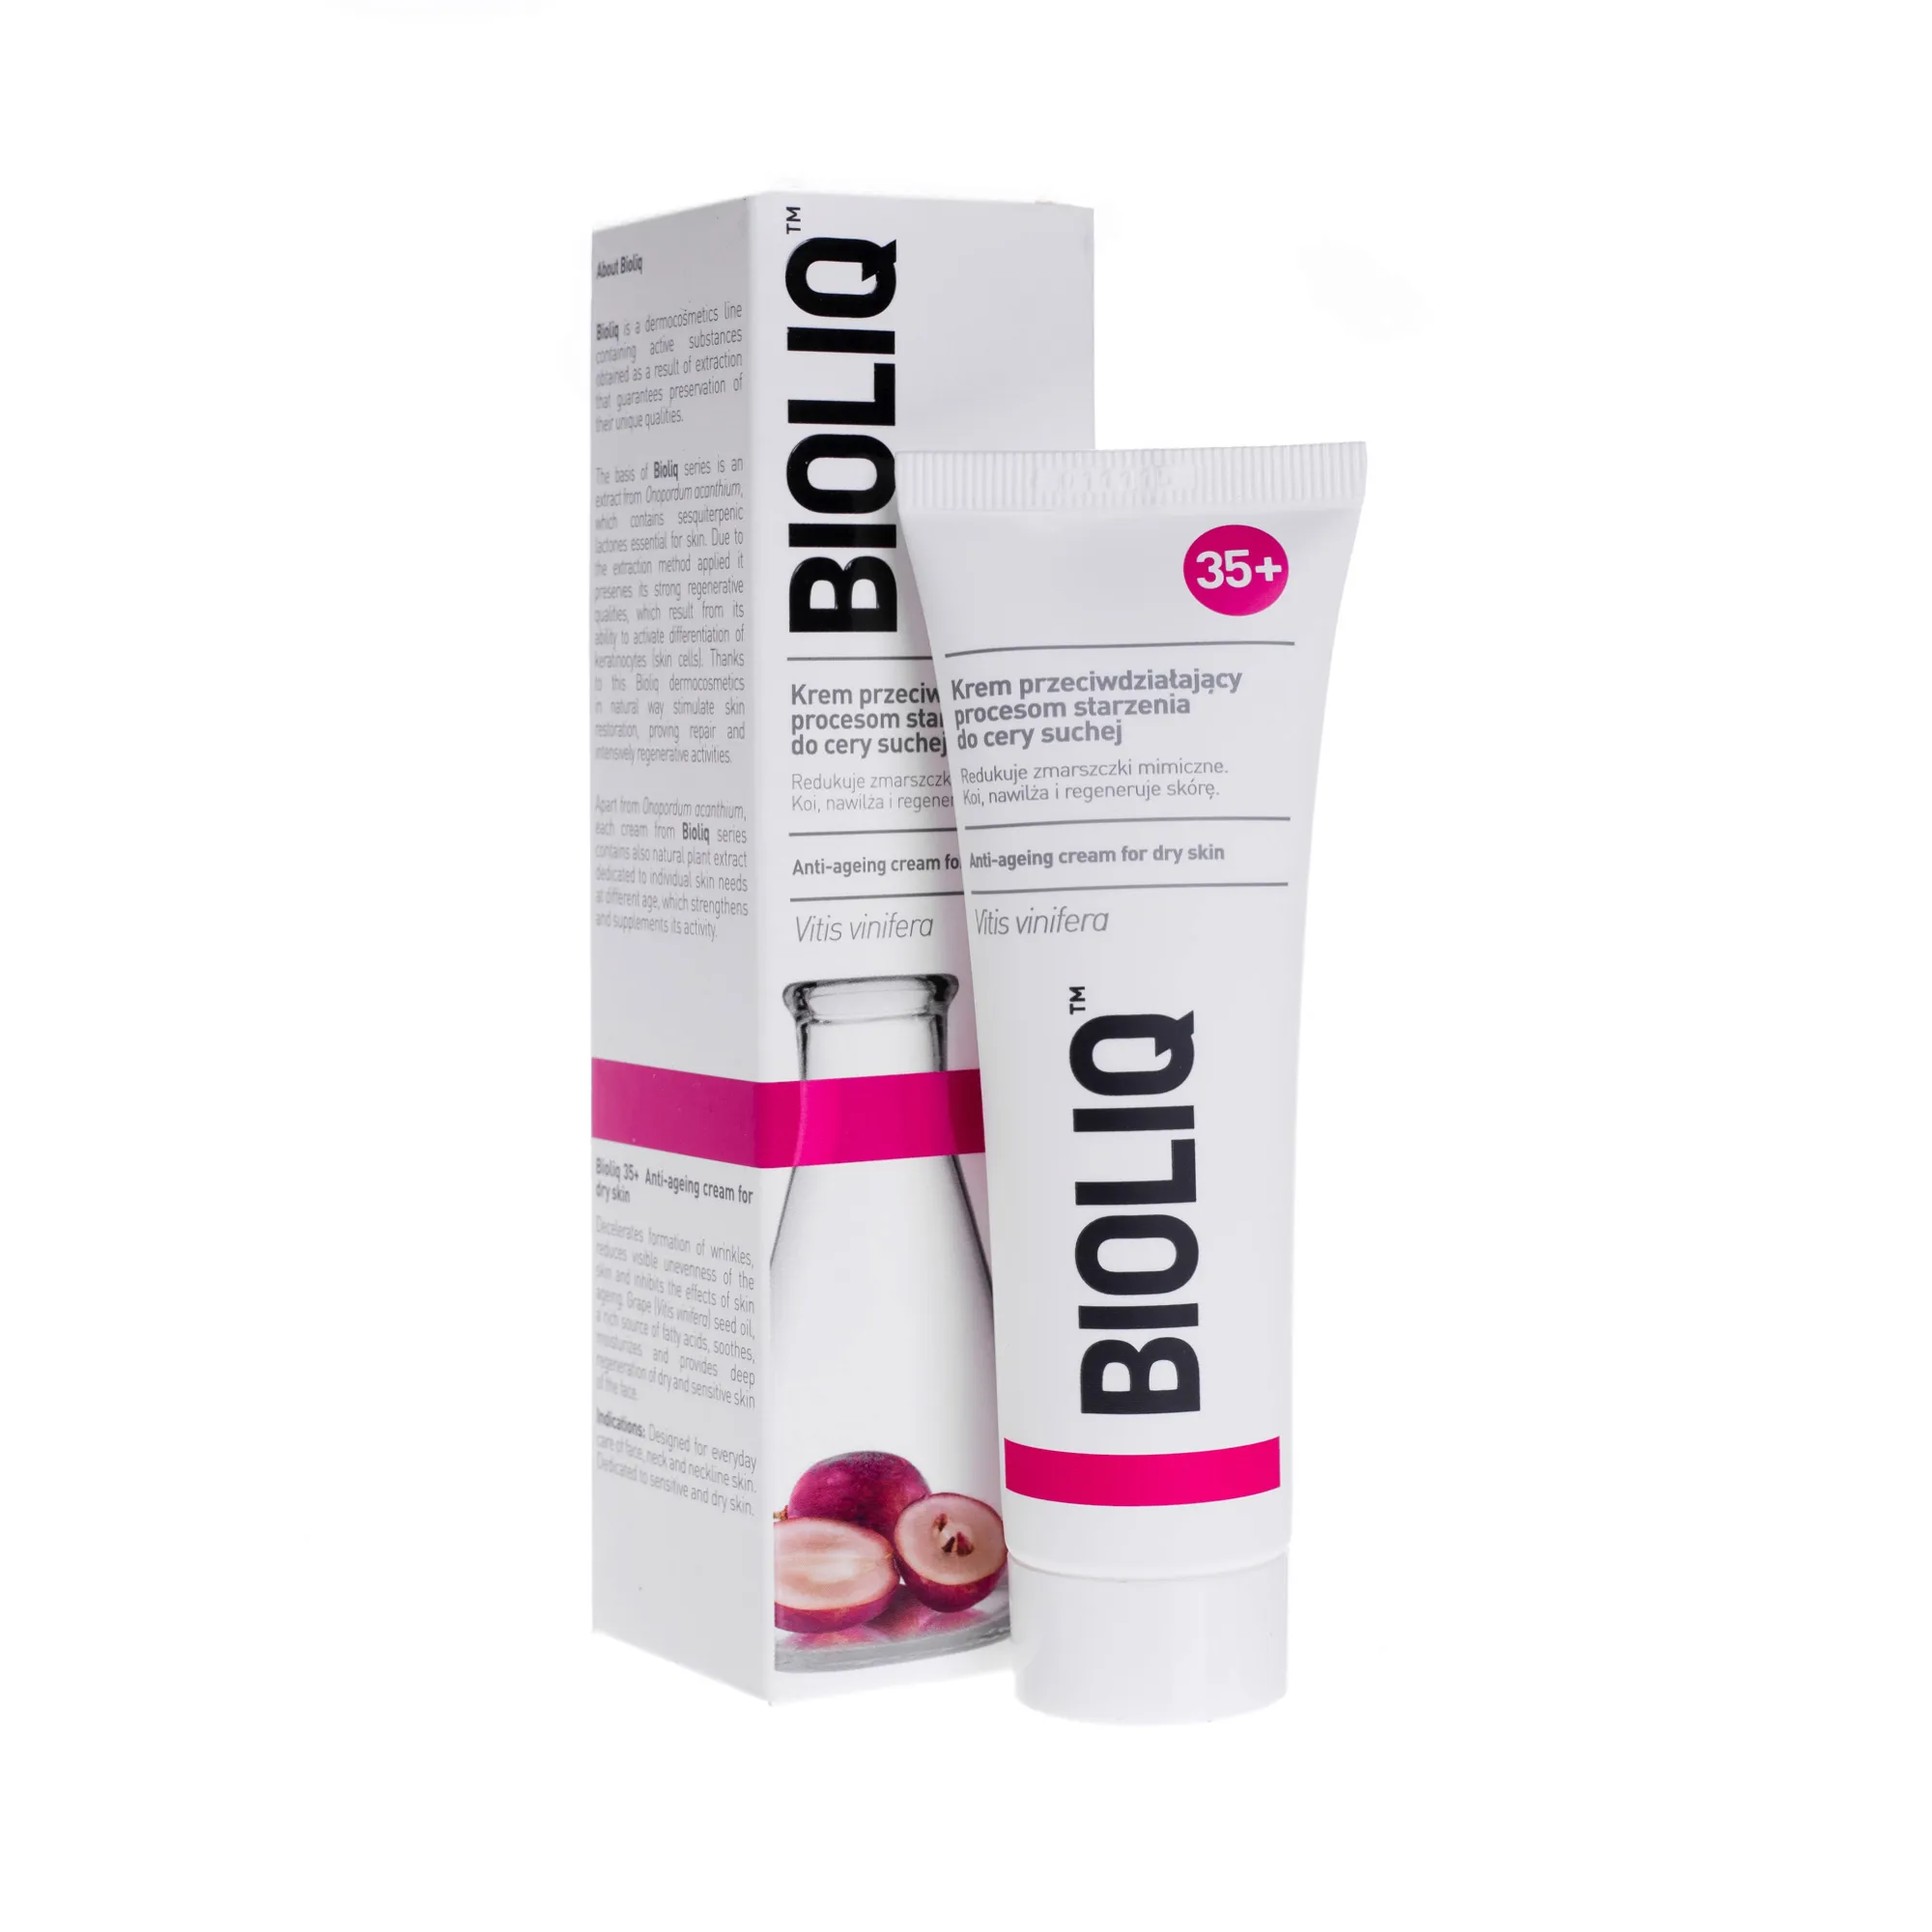 Bioliq 35+, krem przeciwdziałający procesom starzenia do skóry suchej, 50 ml